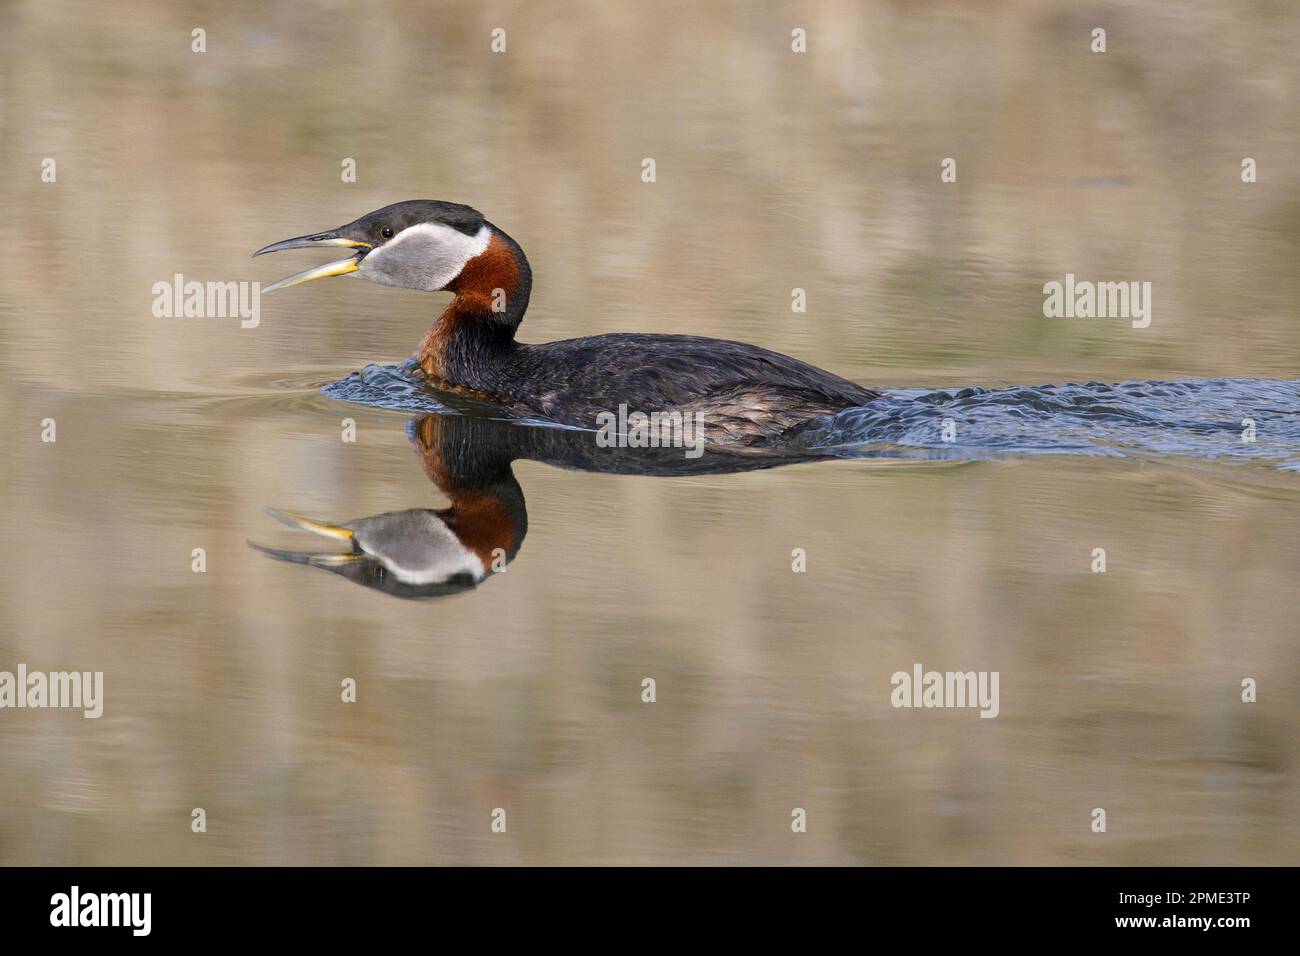 Grebe à col rouge dans un plumage reproducteur, appelant à son compagnon lorsqu'il nage à travers un étang, parc provincial Fish Creek, Calgary, Canada. Podiceps grisegena Banque D'Images